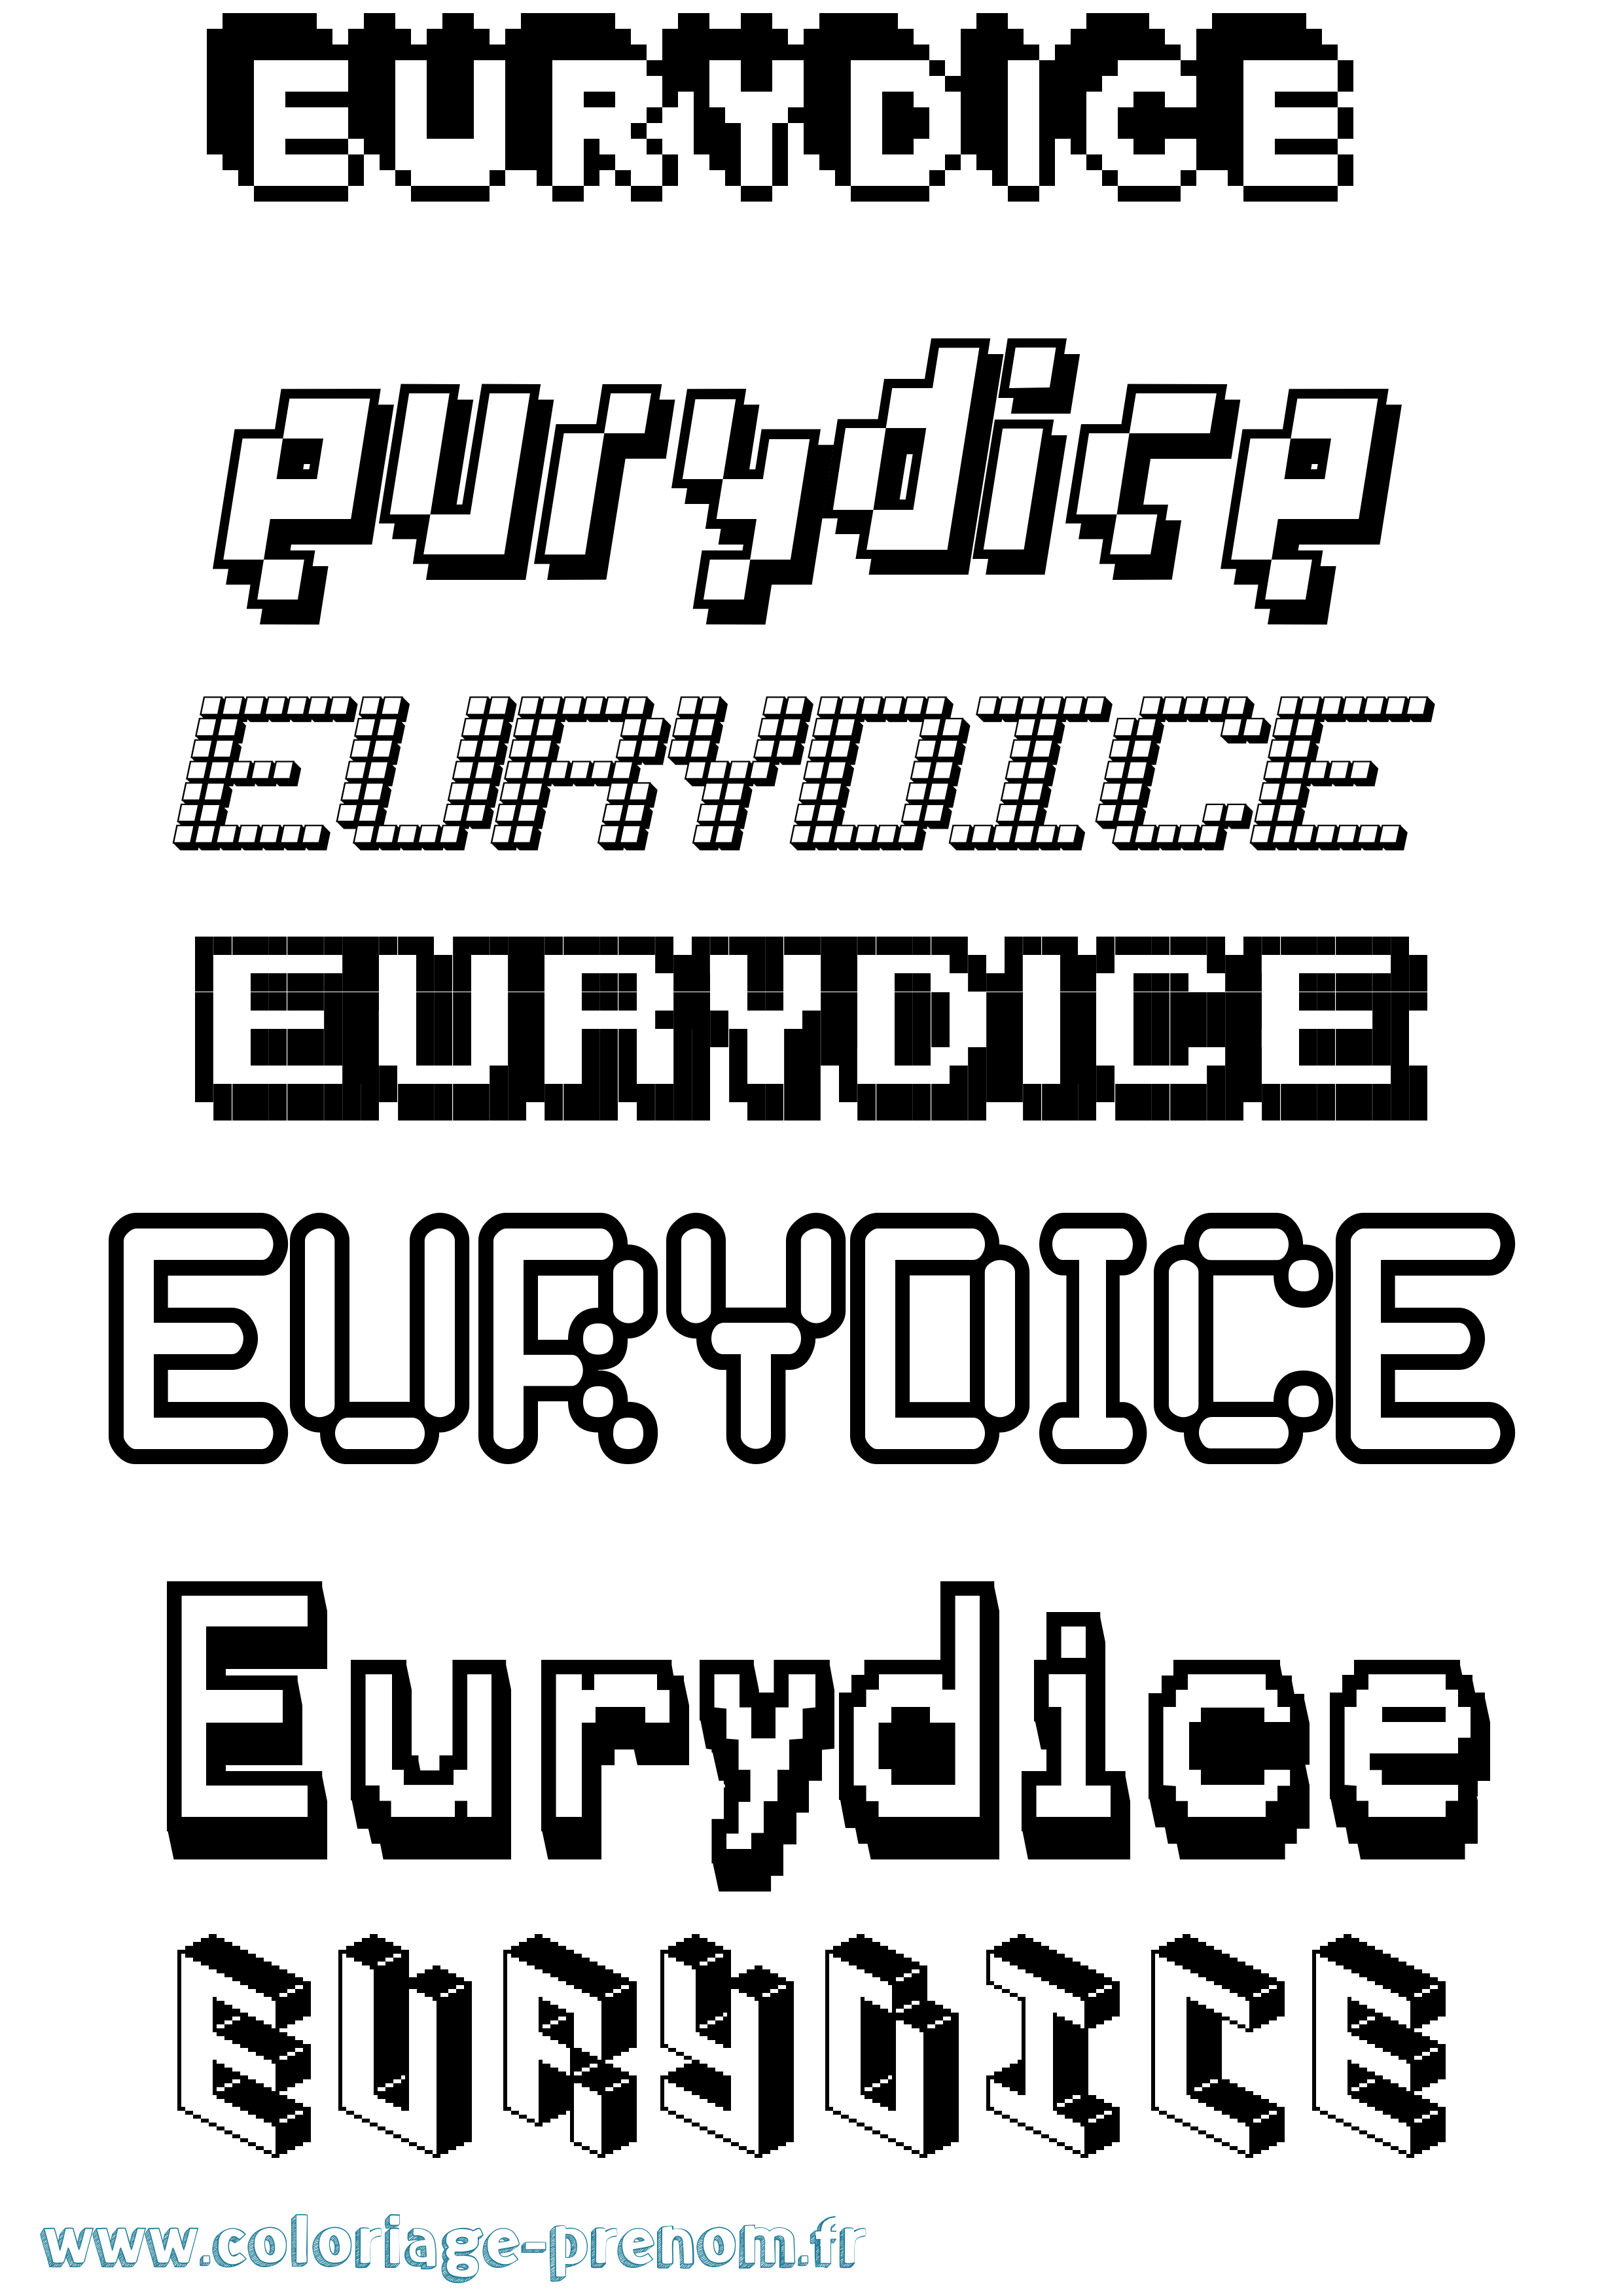 Coloriage prénom Eurydice Pixel